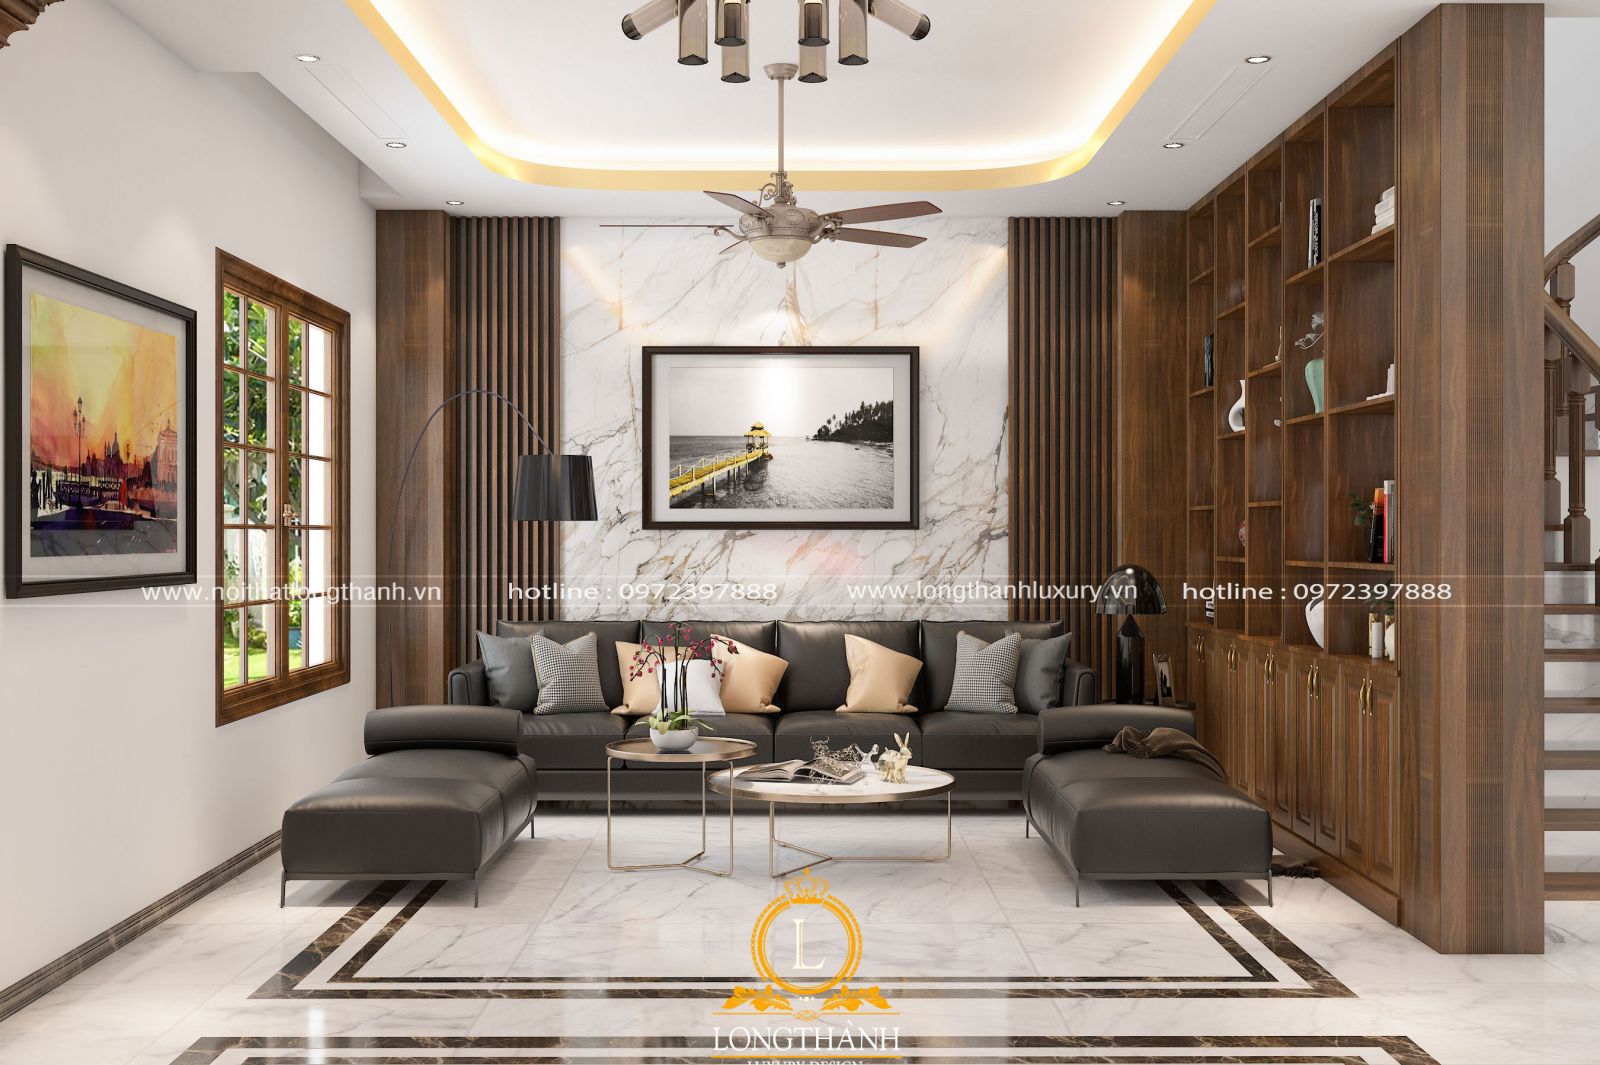 Những mẫu phòng khách thiết kế nội thất đẹp 2021 – Nội thất Kim Cương